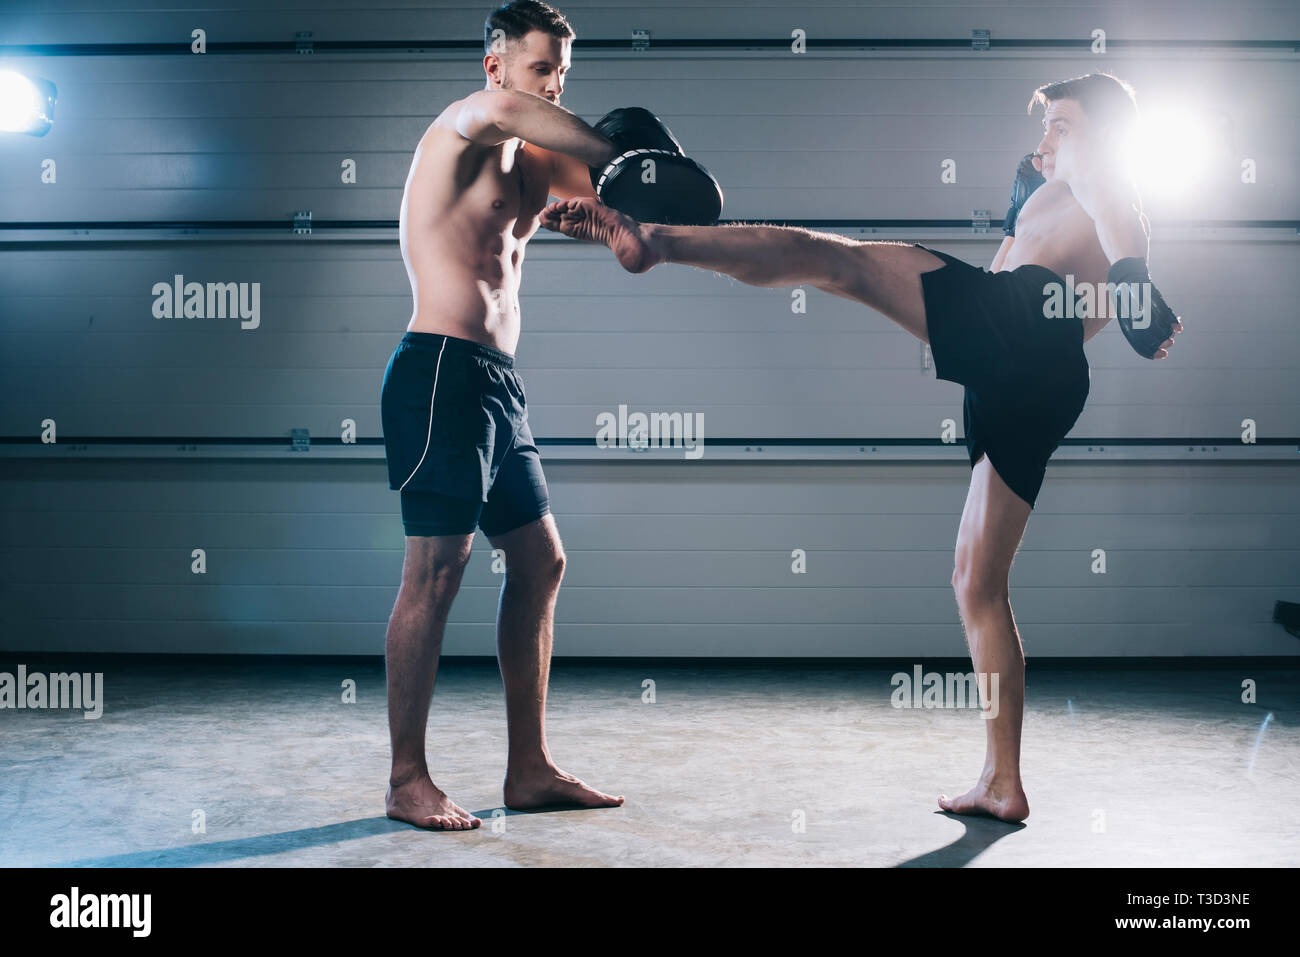 Starke muskuläre shirtless MMA-Kämpfer üben High Kick mit einem anderen Sportler während des Trainings Stockfoto